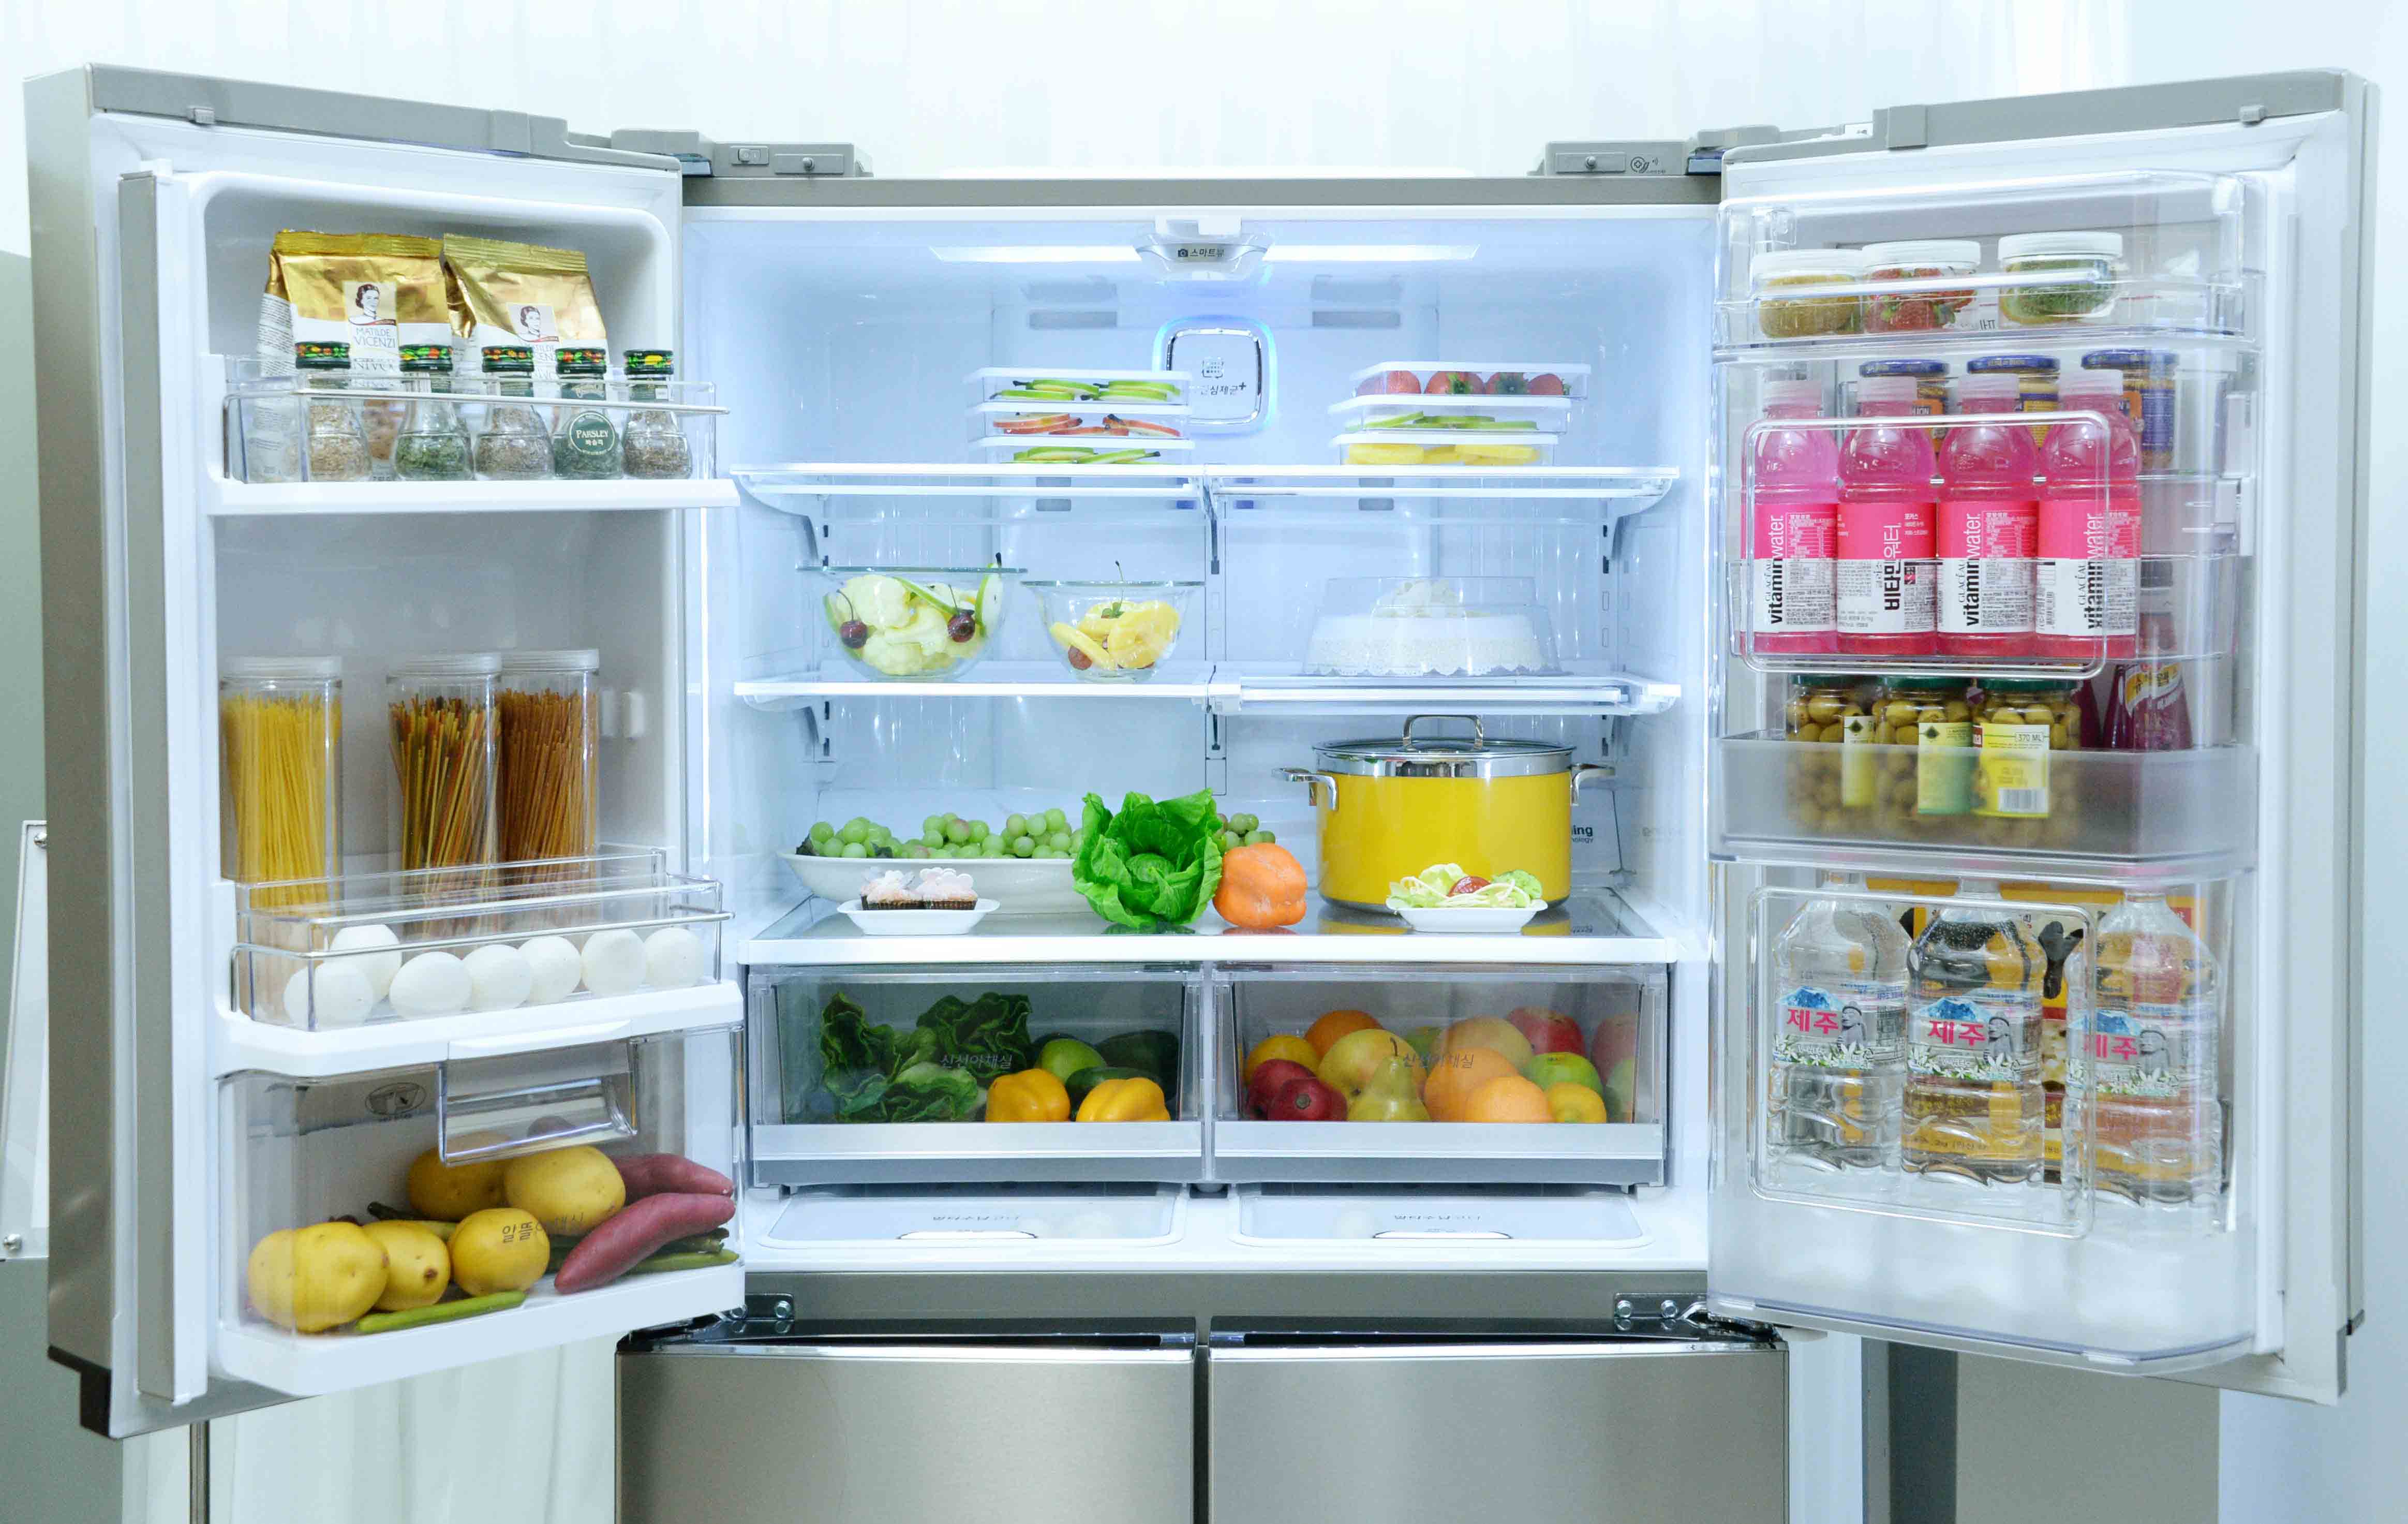 Chức năng Smart Manager biến chiếc tủ lạnh trở thành hệ thống quản lý đồ ăn hiện đại